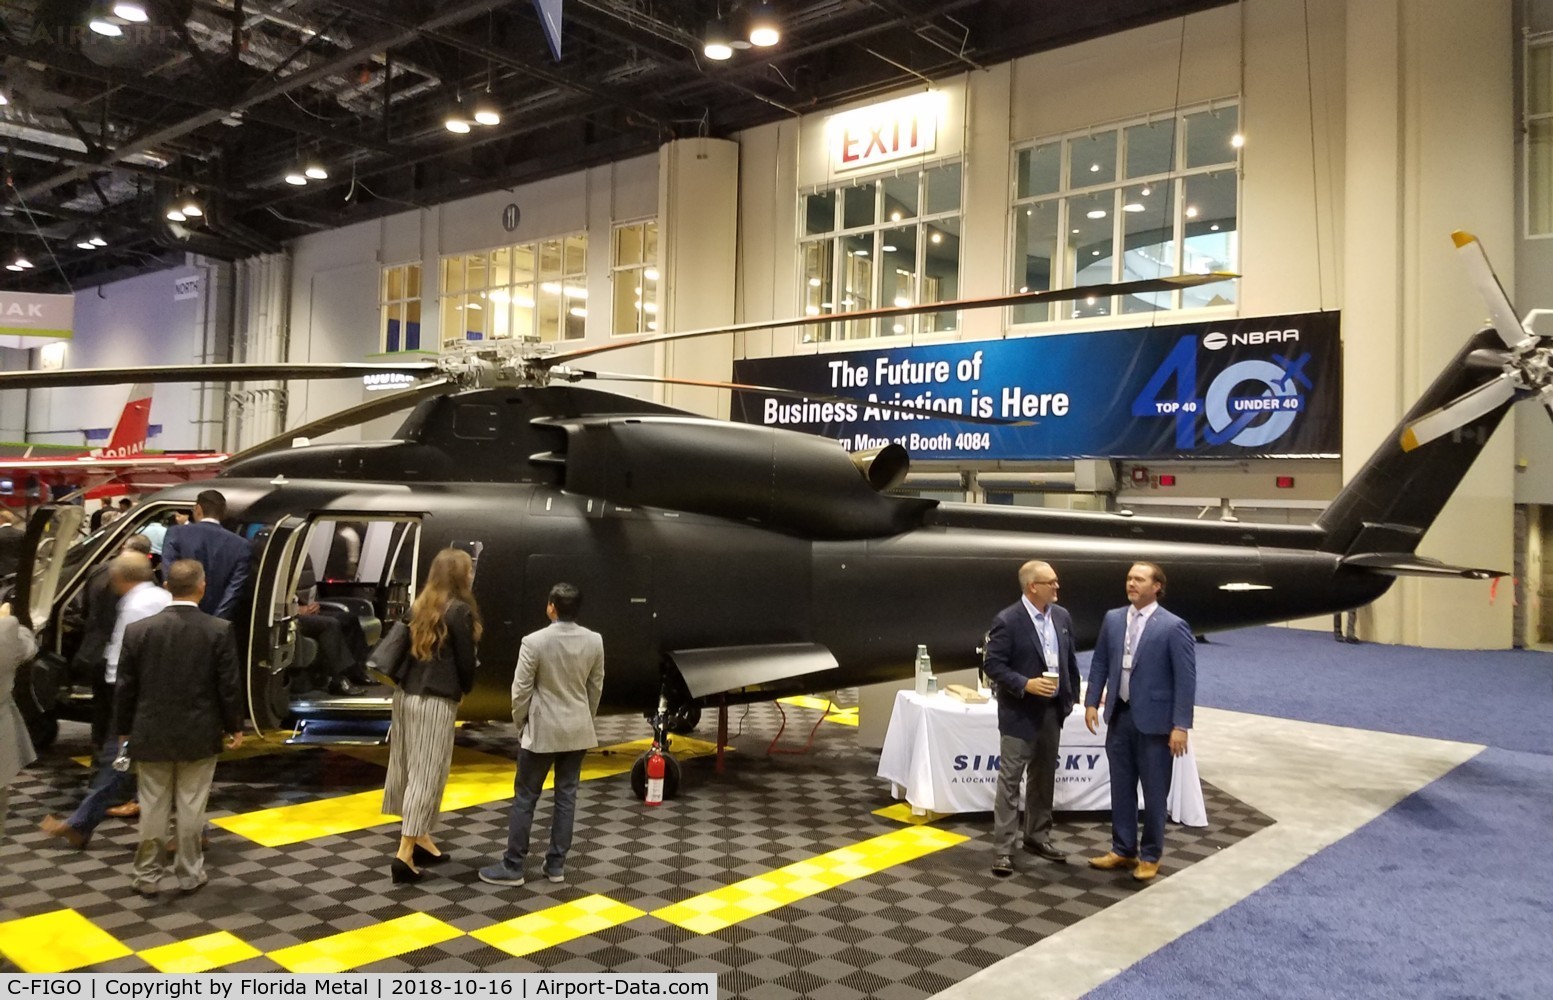 C-FIGO, 2016 Sikorsky S-76D C/N 761026, NBAA 2018